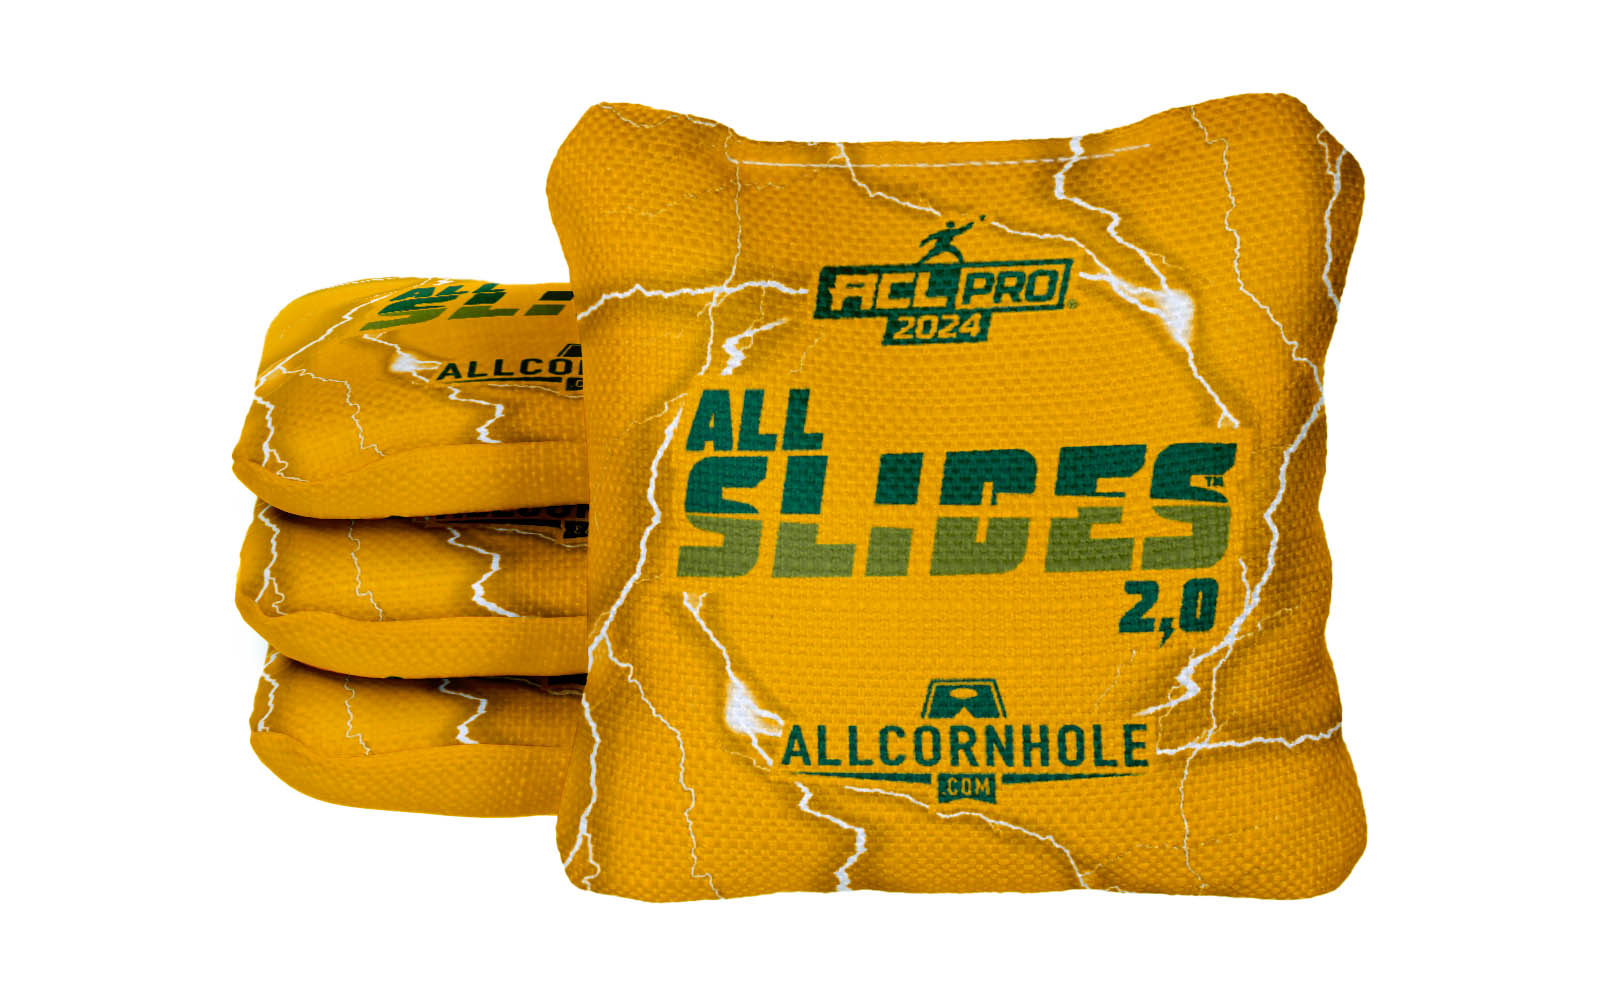 Officially Licensed Collegiate Cornhole Bags - AllCornhole All-Slide 2.0 - Set of 4 - Baylor University